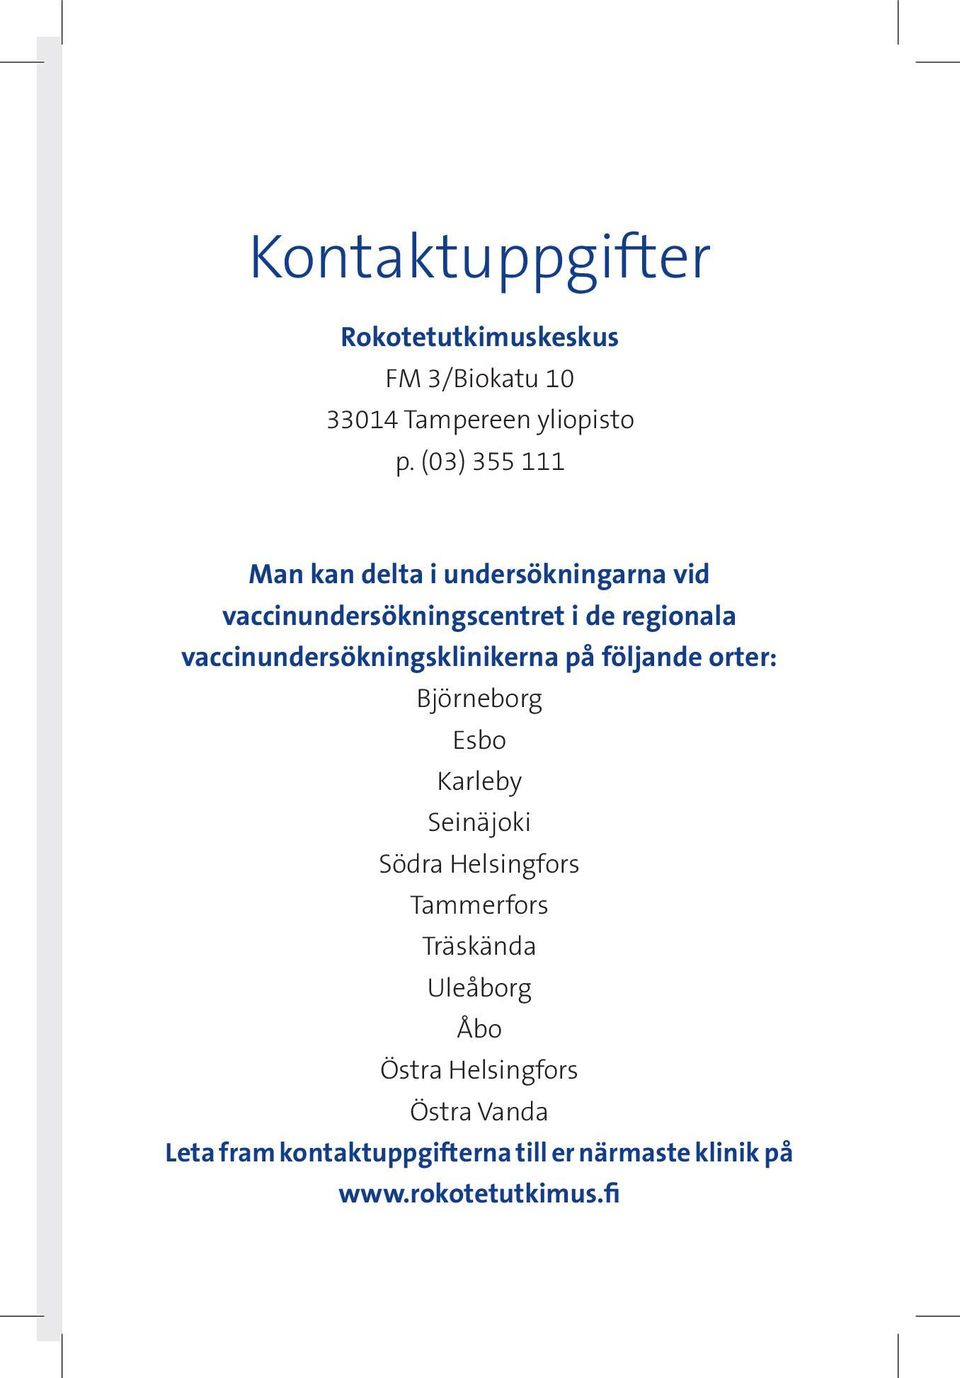 vaccinundersökningsklinikerna på följande orter: Björneborg Esbo Karleby Seinäjoki Södra Helsingfors